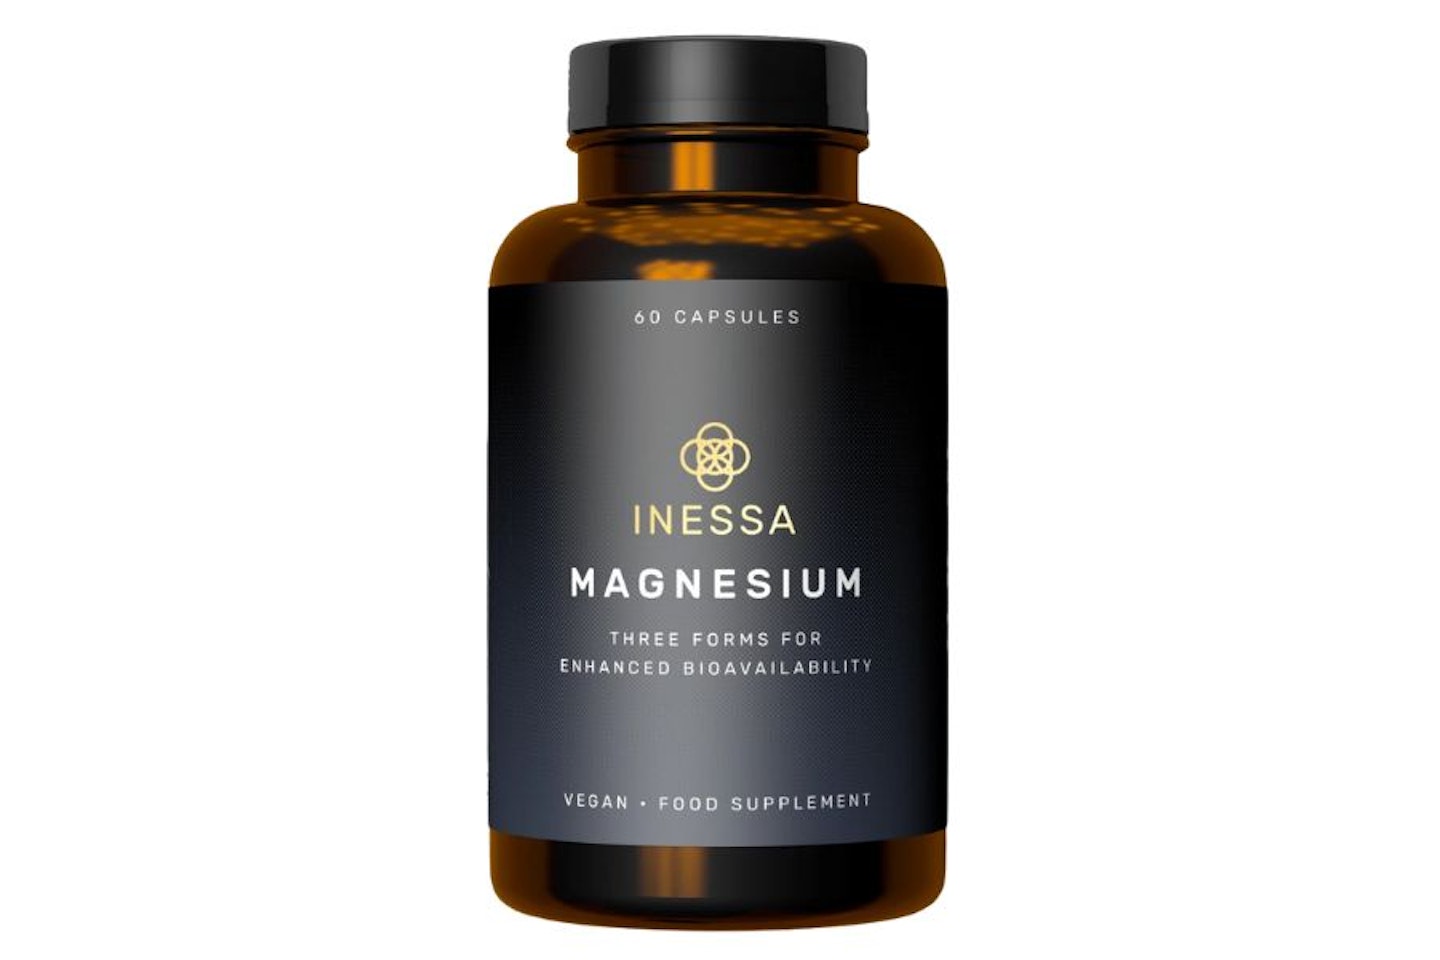 Inessa Magnesium